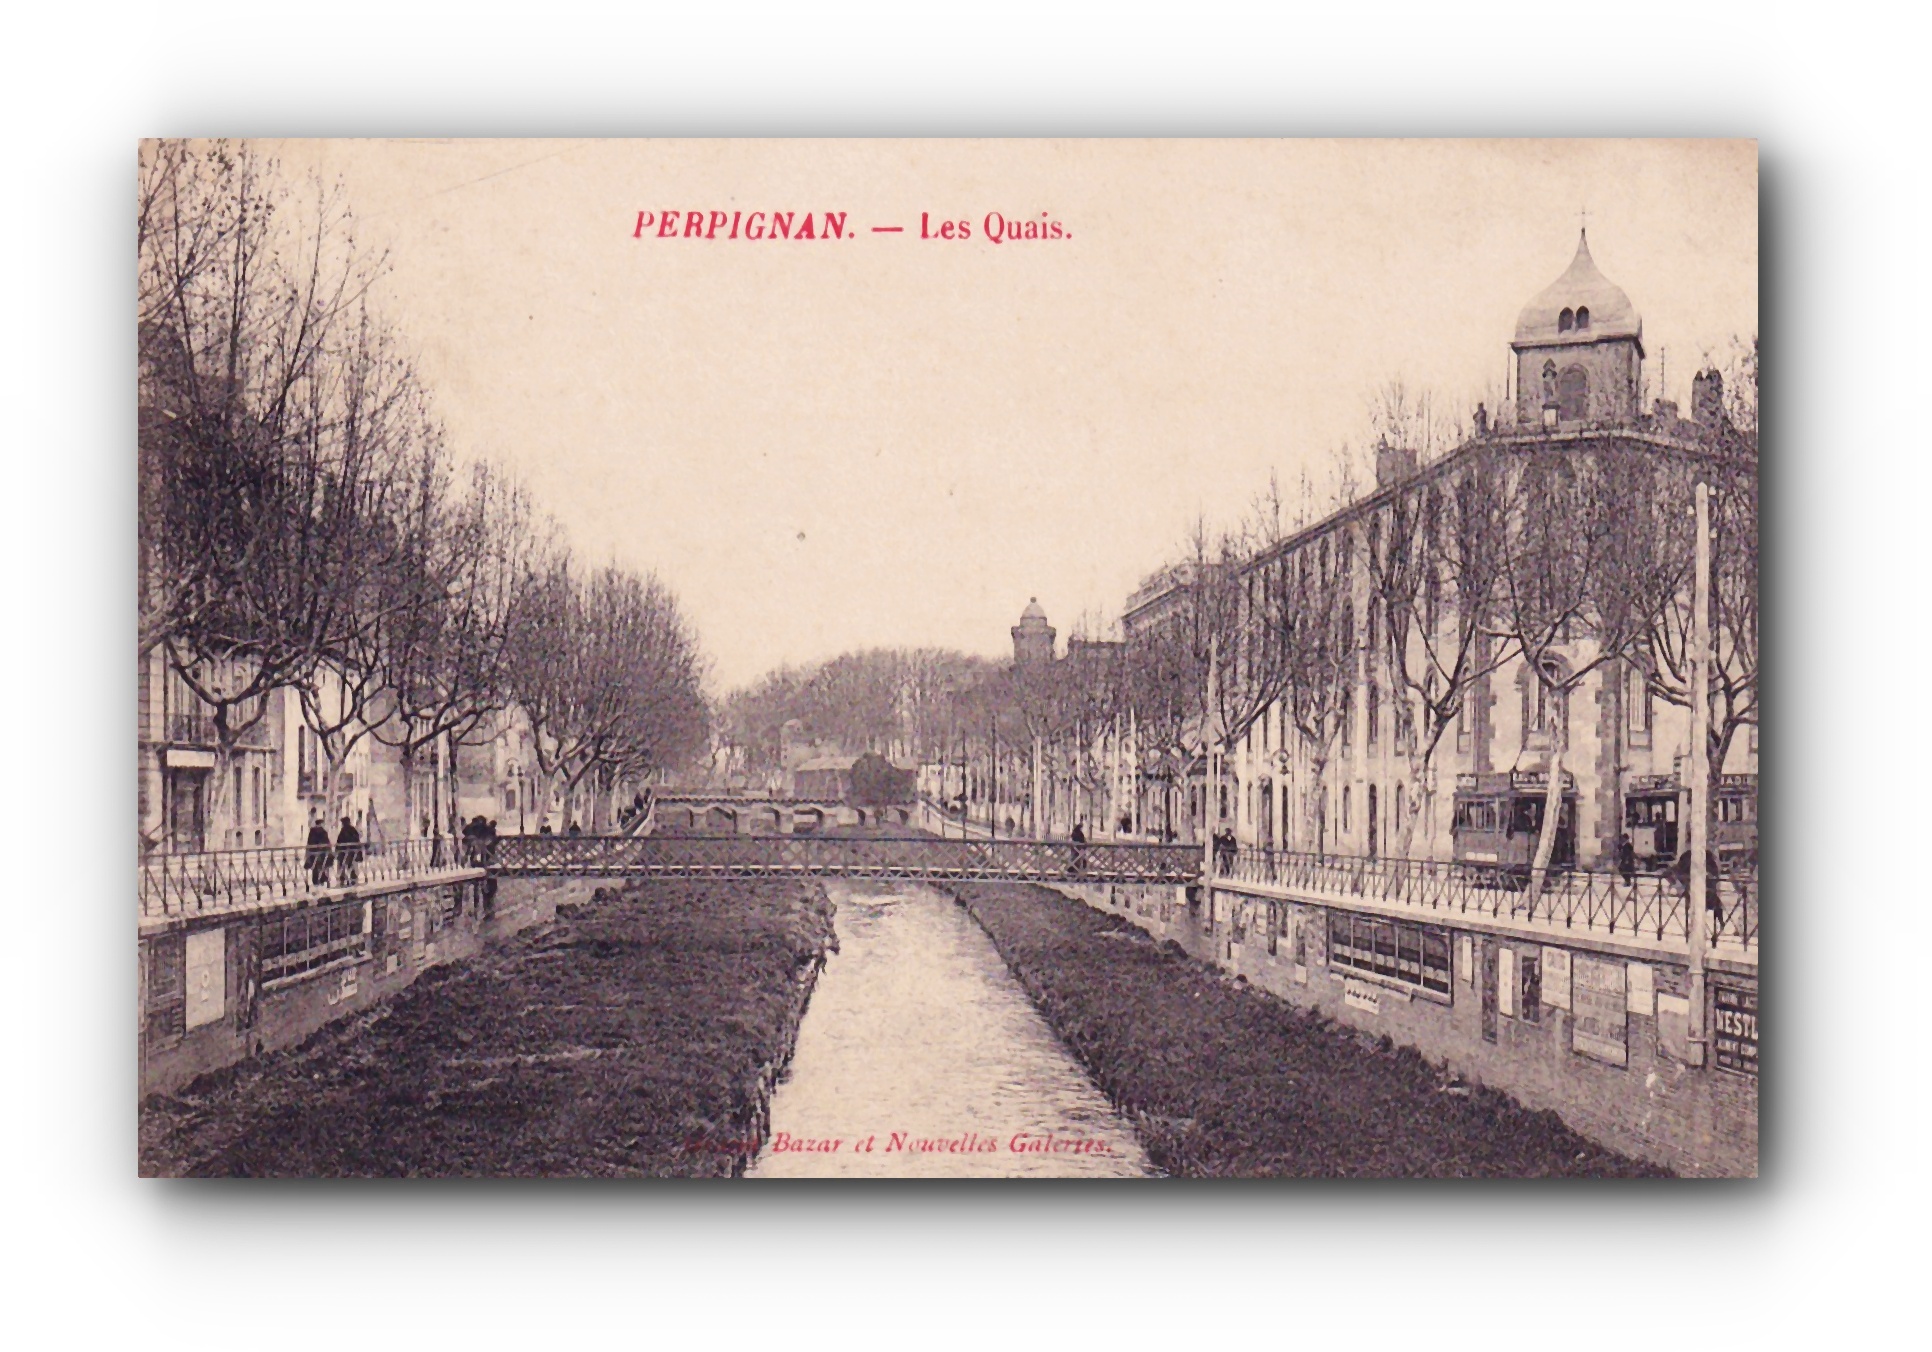 - PERPIGNAN - Les Quais - 25.04.1908 -